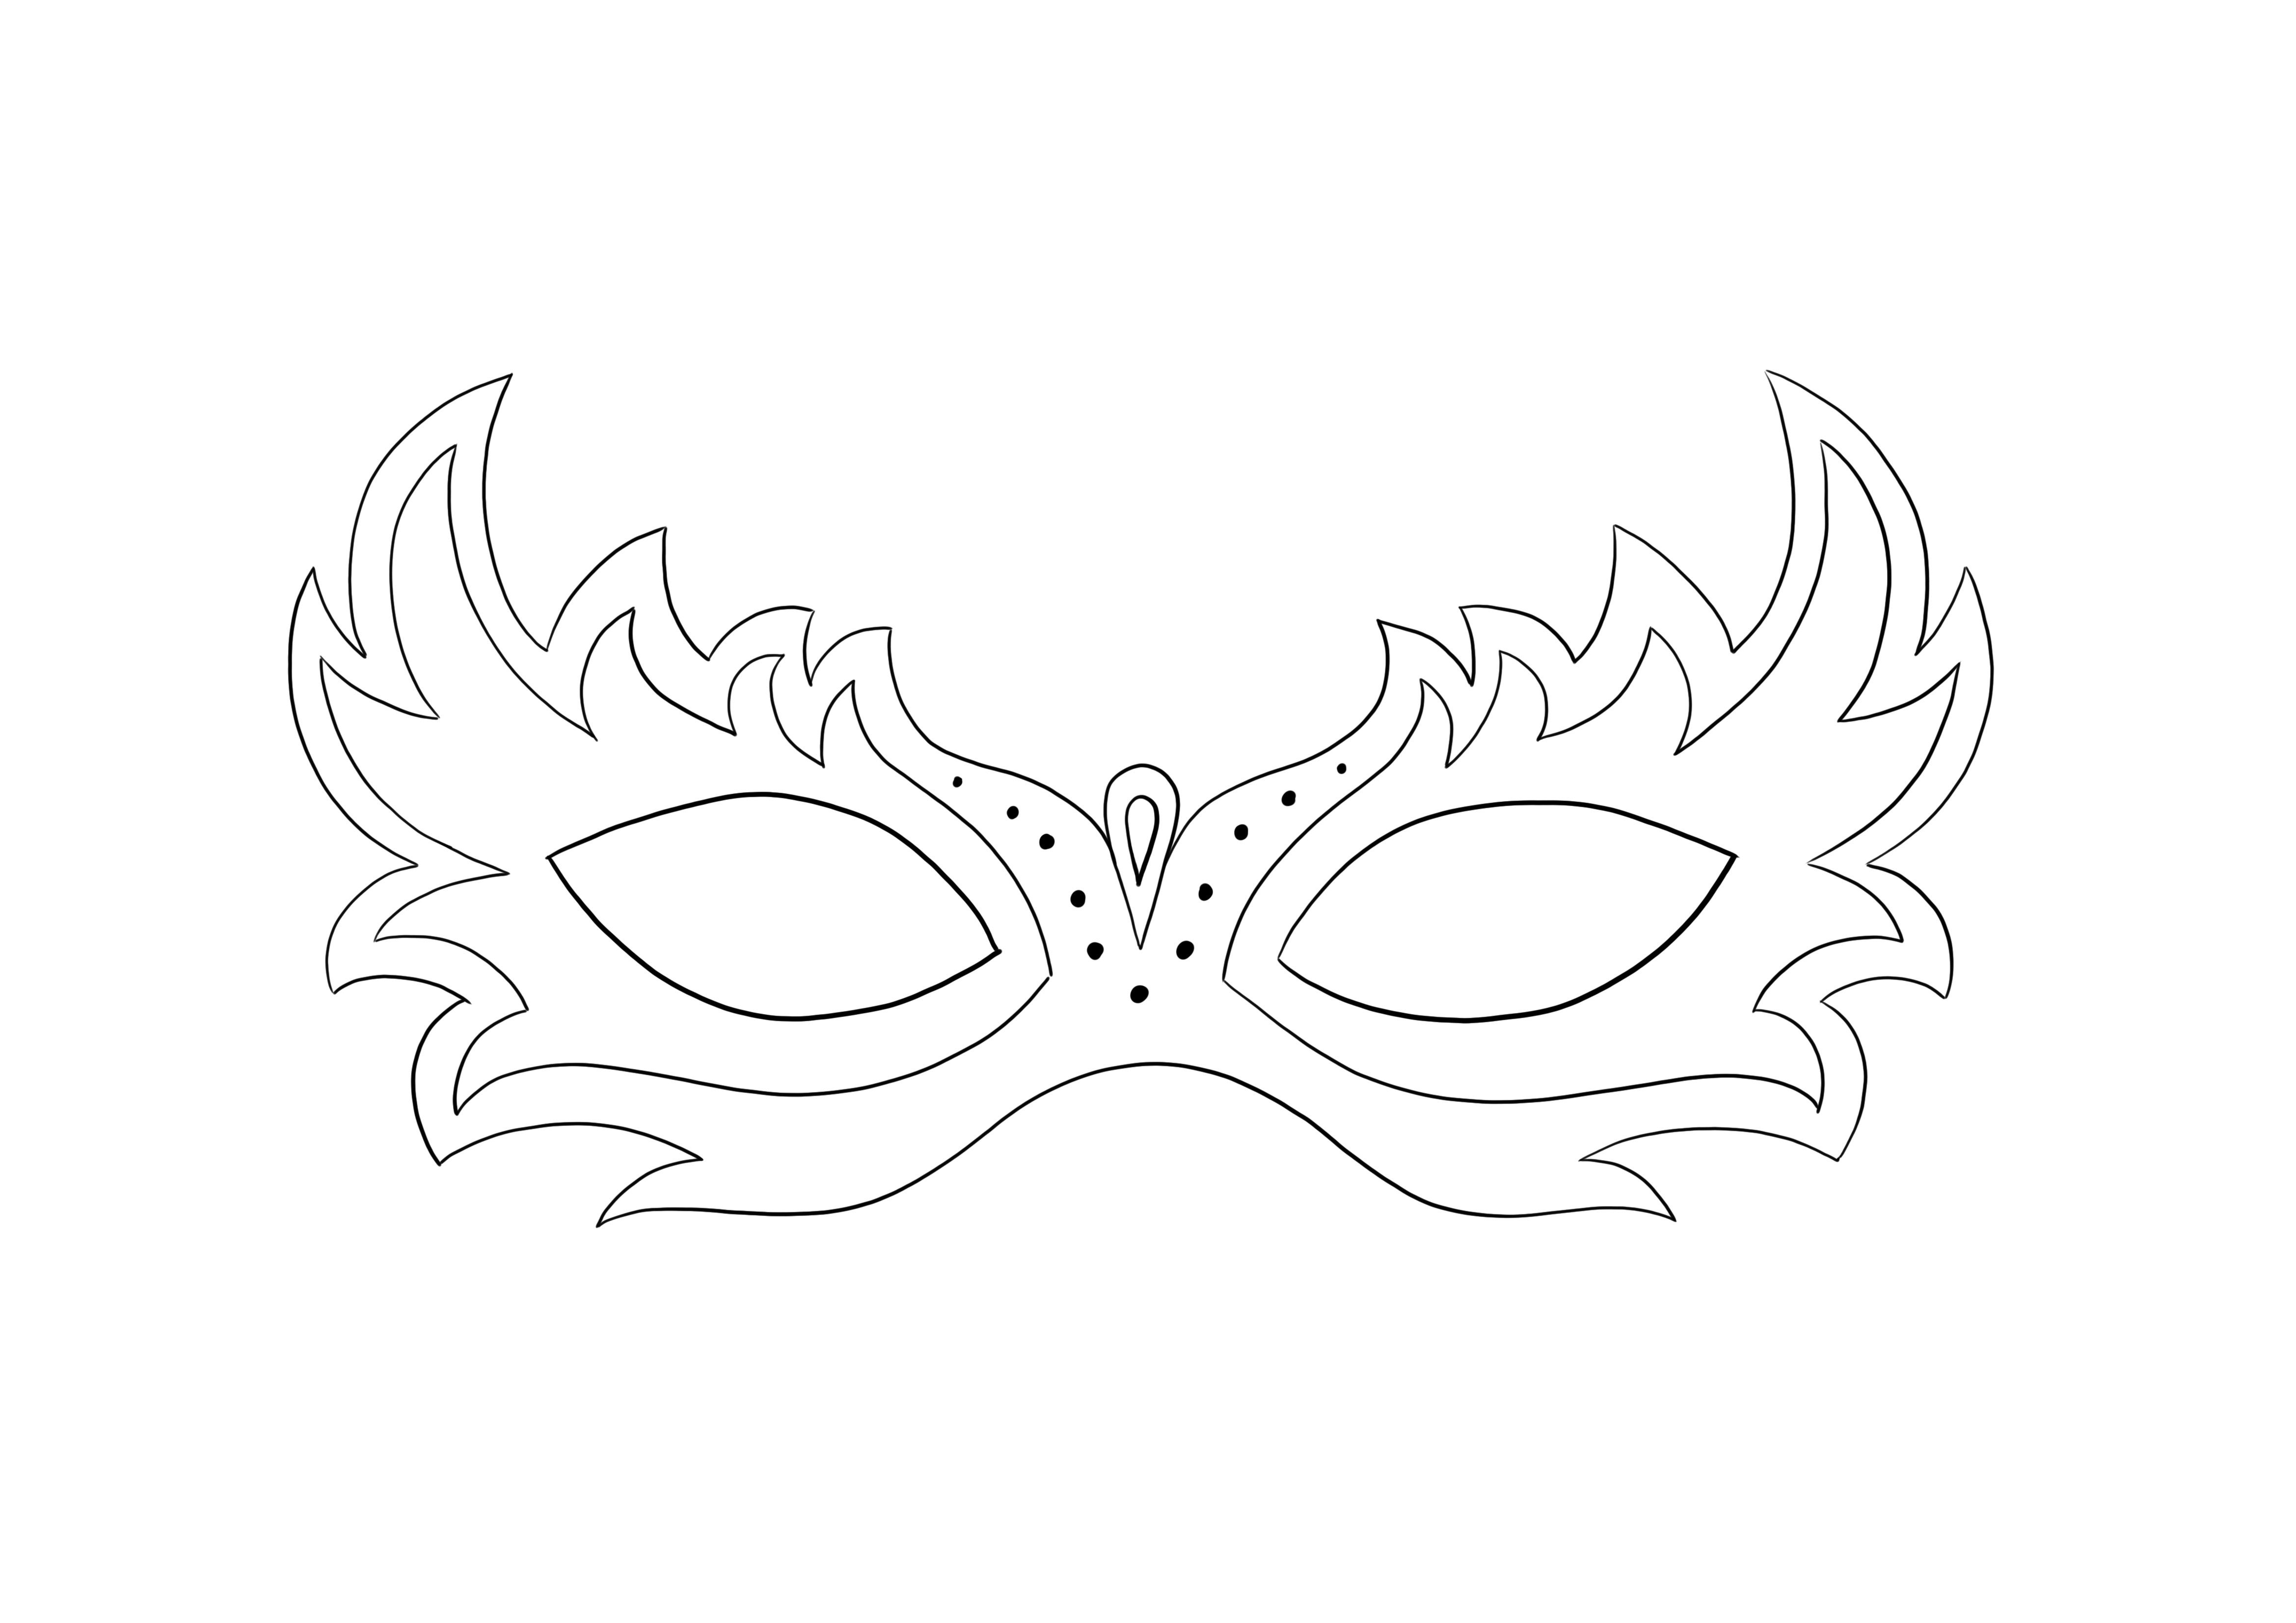 Masquerade mask - helppo värittää ja ladata ilmaiseksi